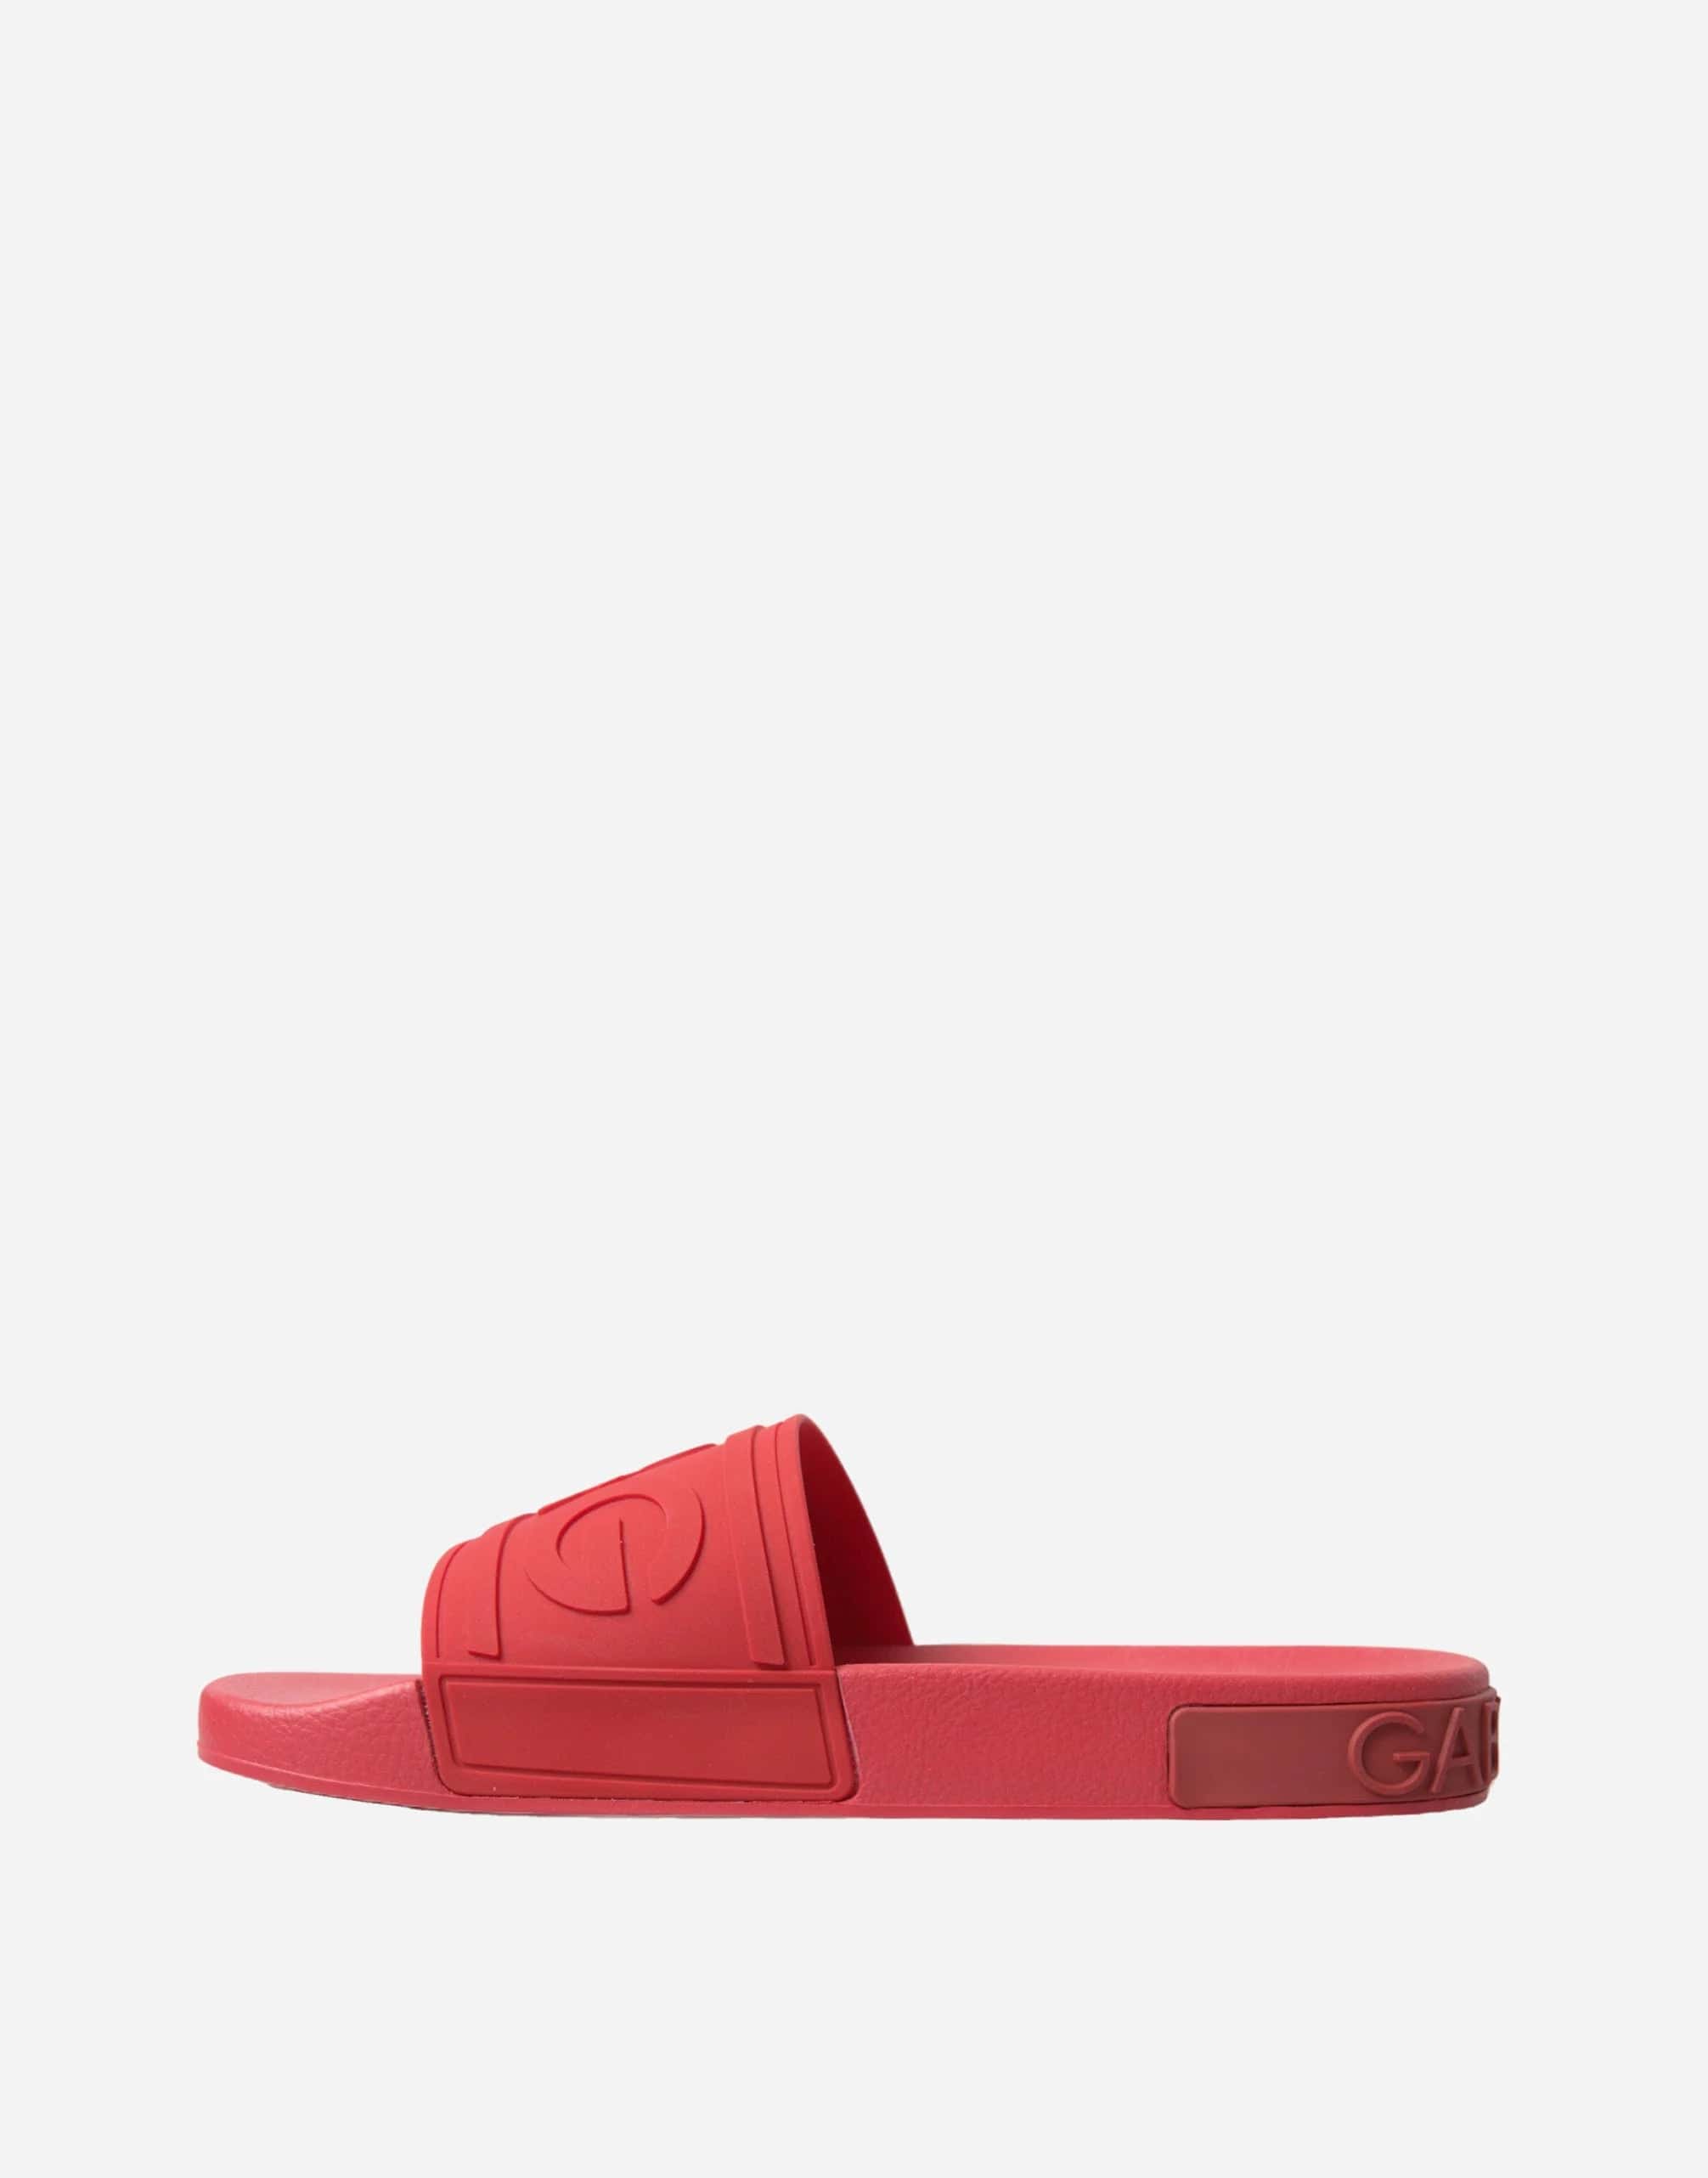 Dolce & Gabbana DG Beach Slides